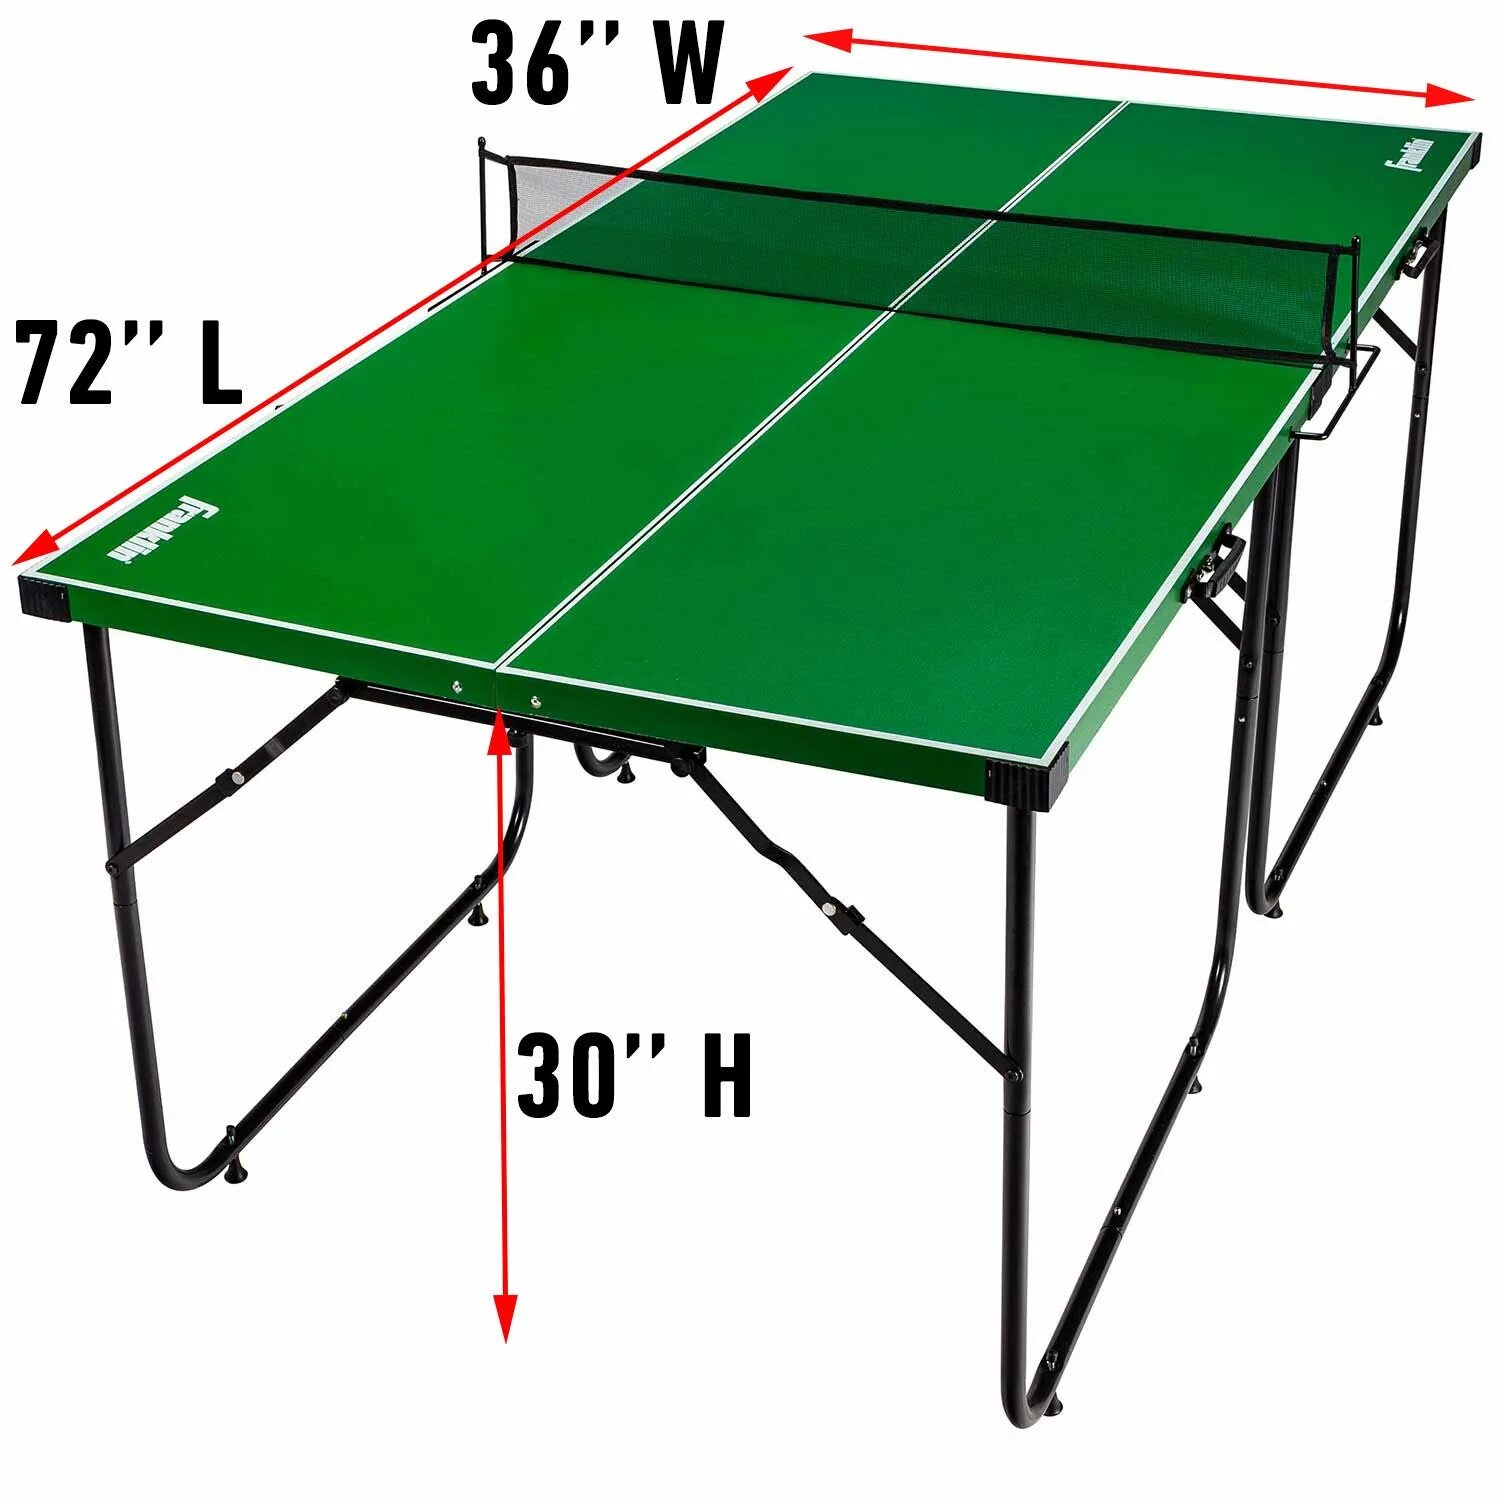 Стол для игры в настольный теннис. Теннисный мини-стол Олимпик. Кронштейн теннисный стол start line. Стол Баттерфляй для настольного тенниса. Stol Tennis” “Ping-Pong”.